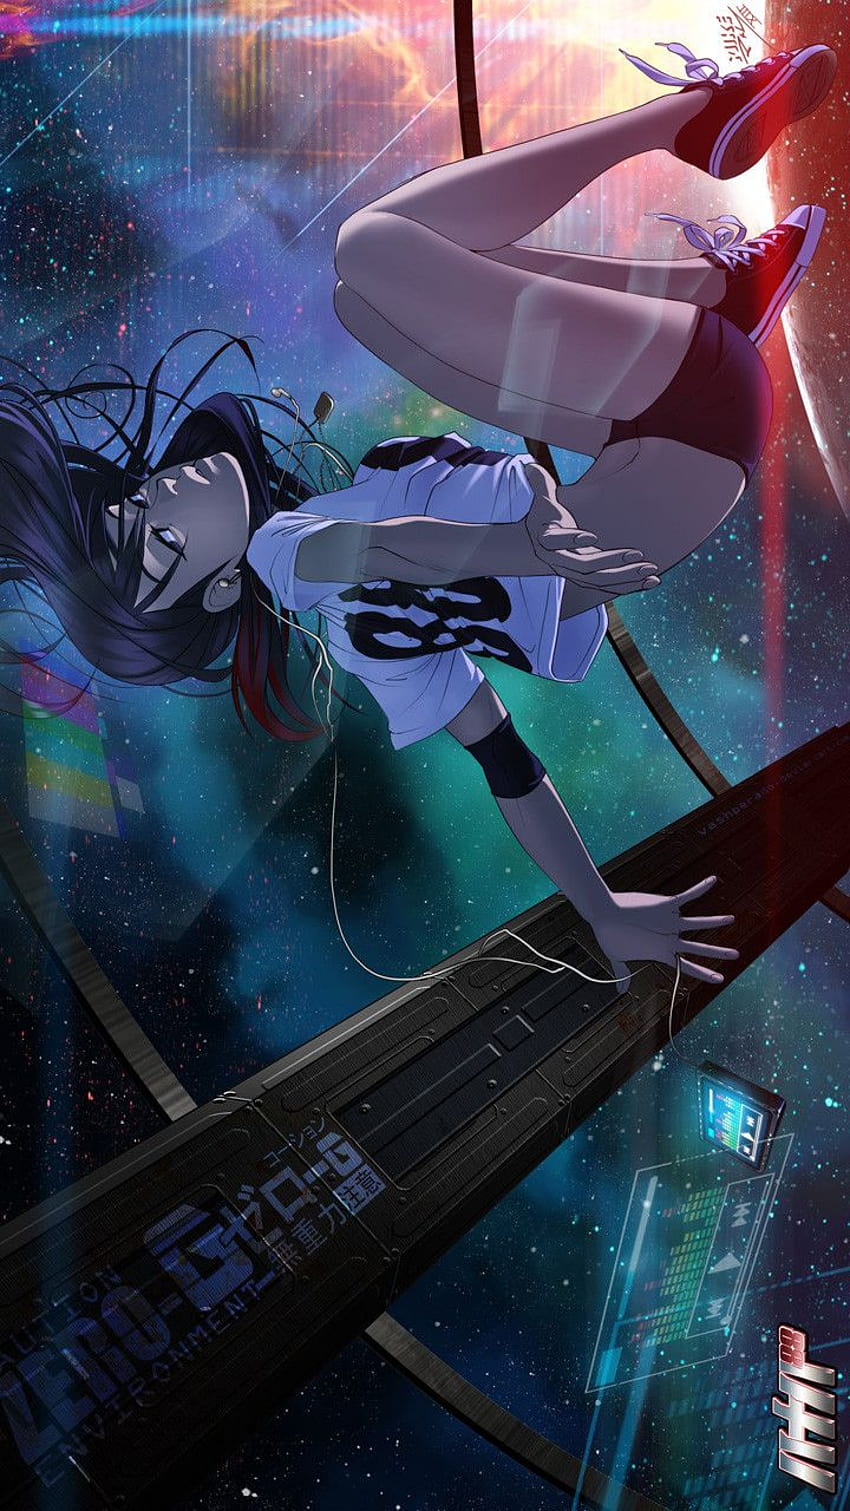 Space Anime Girl: Không còn cái nhìn cổ điển về vũ trụ nữa, Anime đã đưa chúng ta vào một thế giới tươi sáng qua loạt hình ảnh về các cô gái anime ngoài vũ trụ. Với phong cách bắt mắt và đầy táo bạo, các nhân vật ngoại tinh của anime luôn thu hút sự chú ý của người xem, hãy xem để cảm nhận điều này bạn nhé!